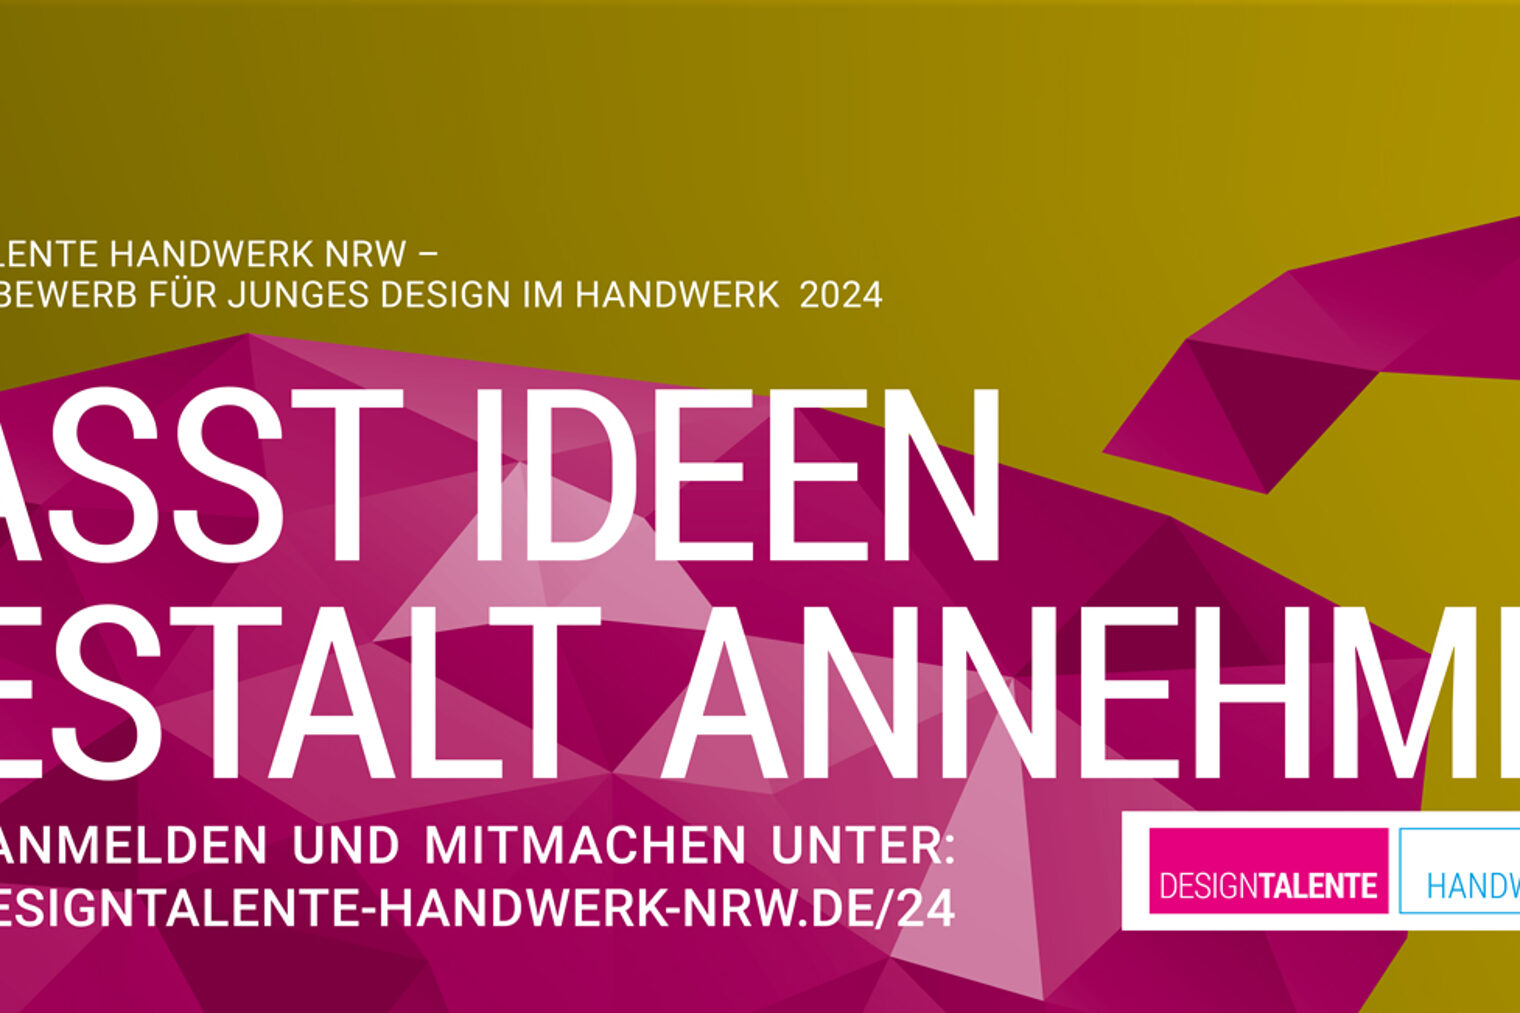 Flyer Anmeldung: www.designtalente-handwerk-nrw.de